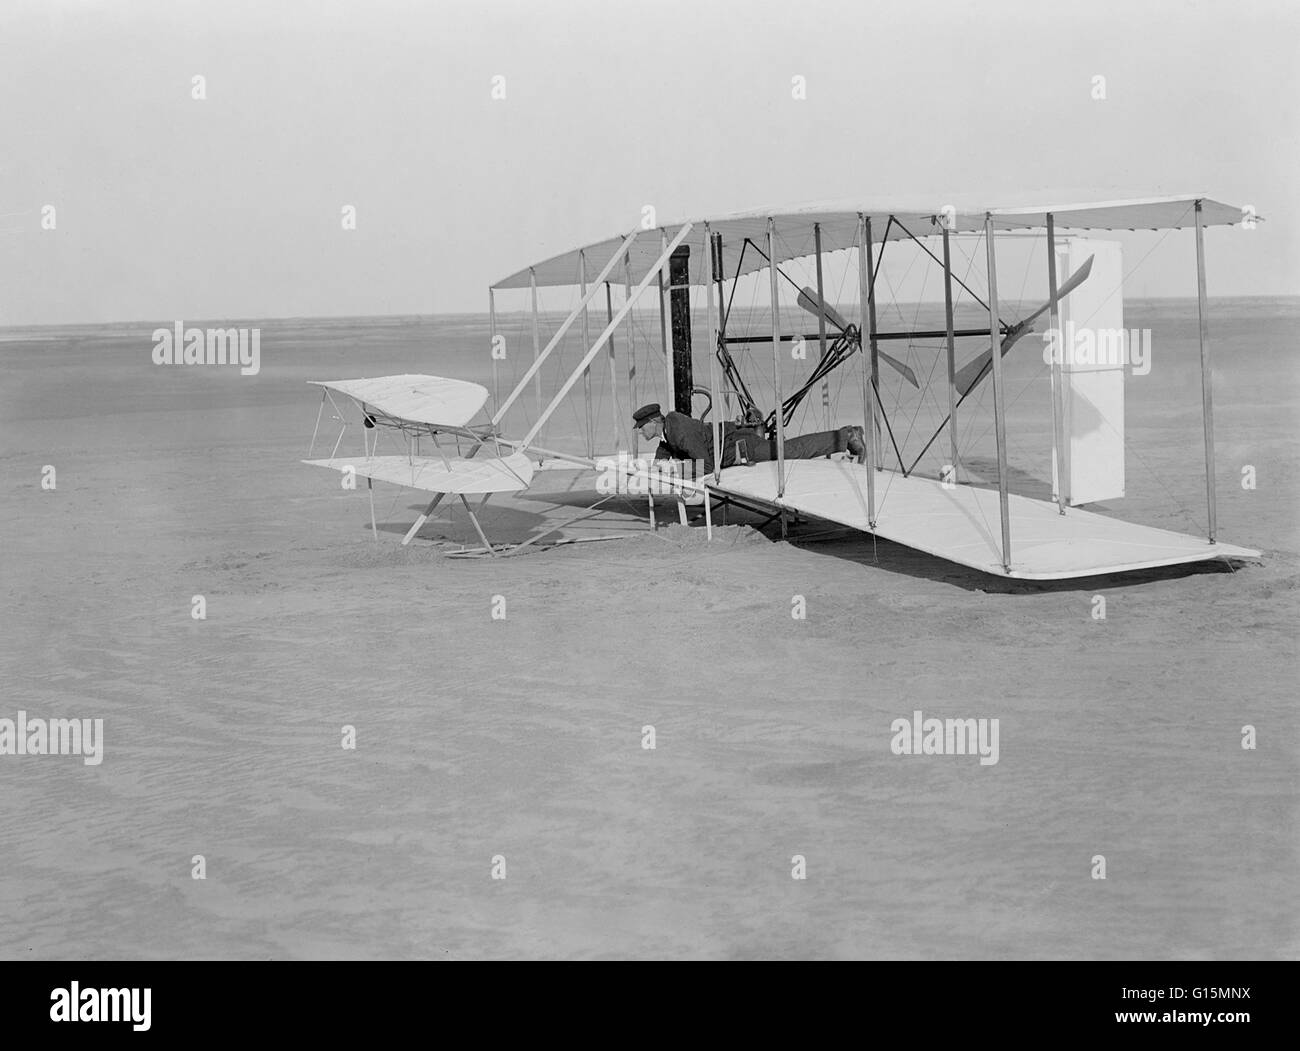 Wright Flyer. Wilbur Wright crash il Wright Flyer il 14 dicembre 1903. Questo volo di prova effettivamente lasciato la terra e solo leggermente danneggiato il velivolo. A seguito di riparazioni il primo volo ha avuto luogo il 17 dicembre, coprendo 36,6 metri Foto Stock